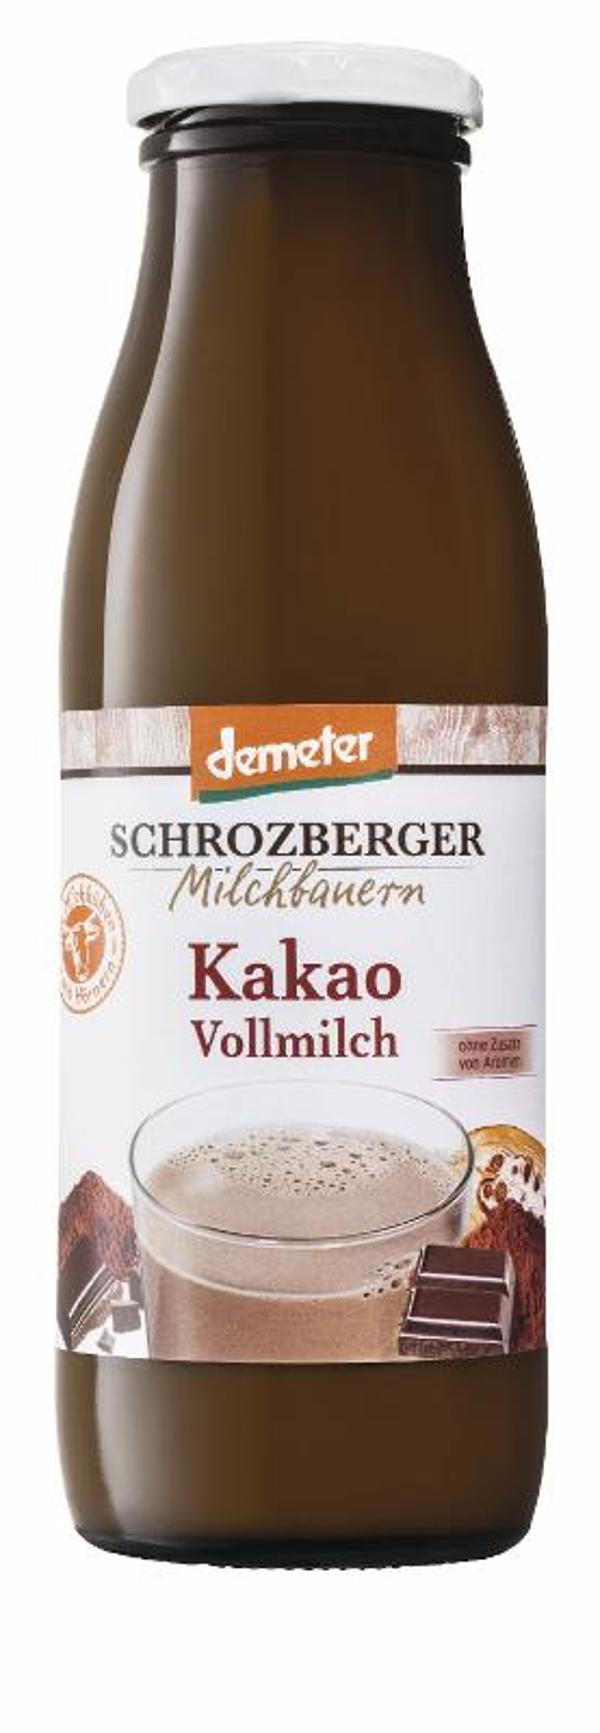 Produktfoto zu Kakao-Milch von Schrozberger